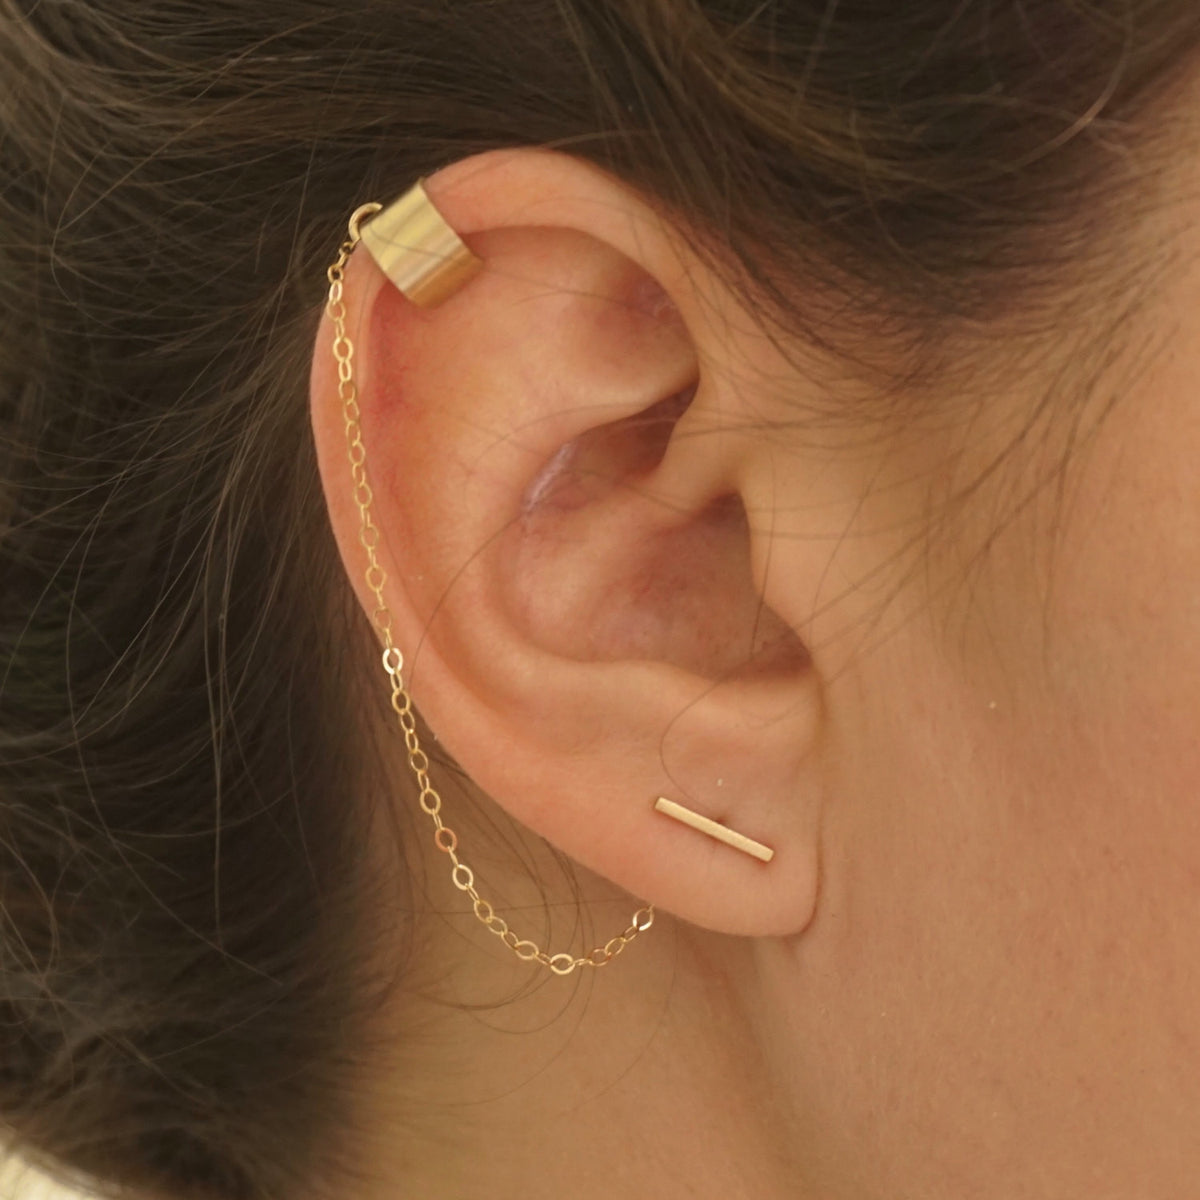 Whole ear earring wrap in handmade silver (E0211) - Shop Stories of Silver  Earrings & Clip-ons - Pinkoi